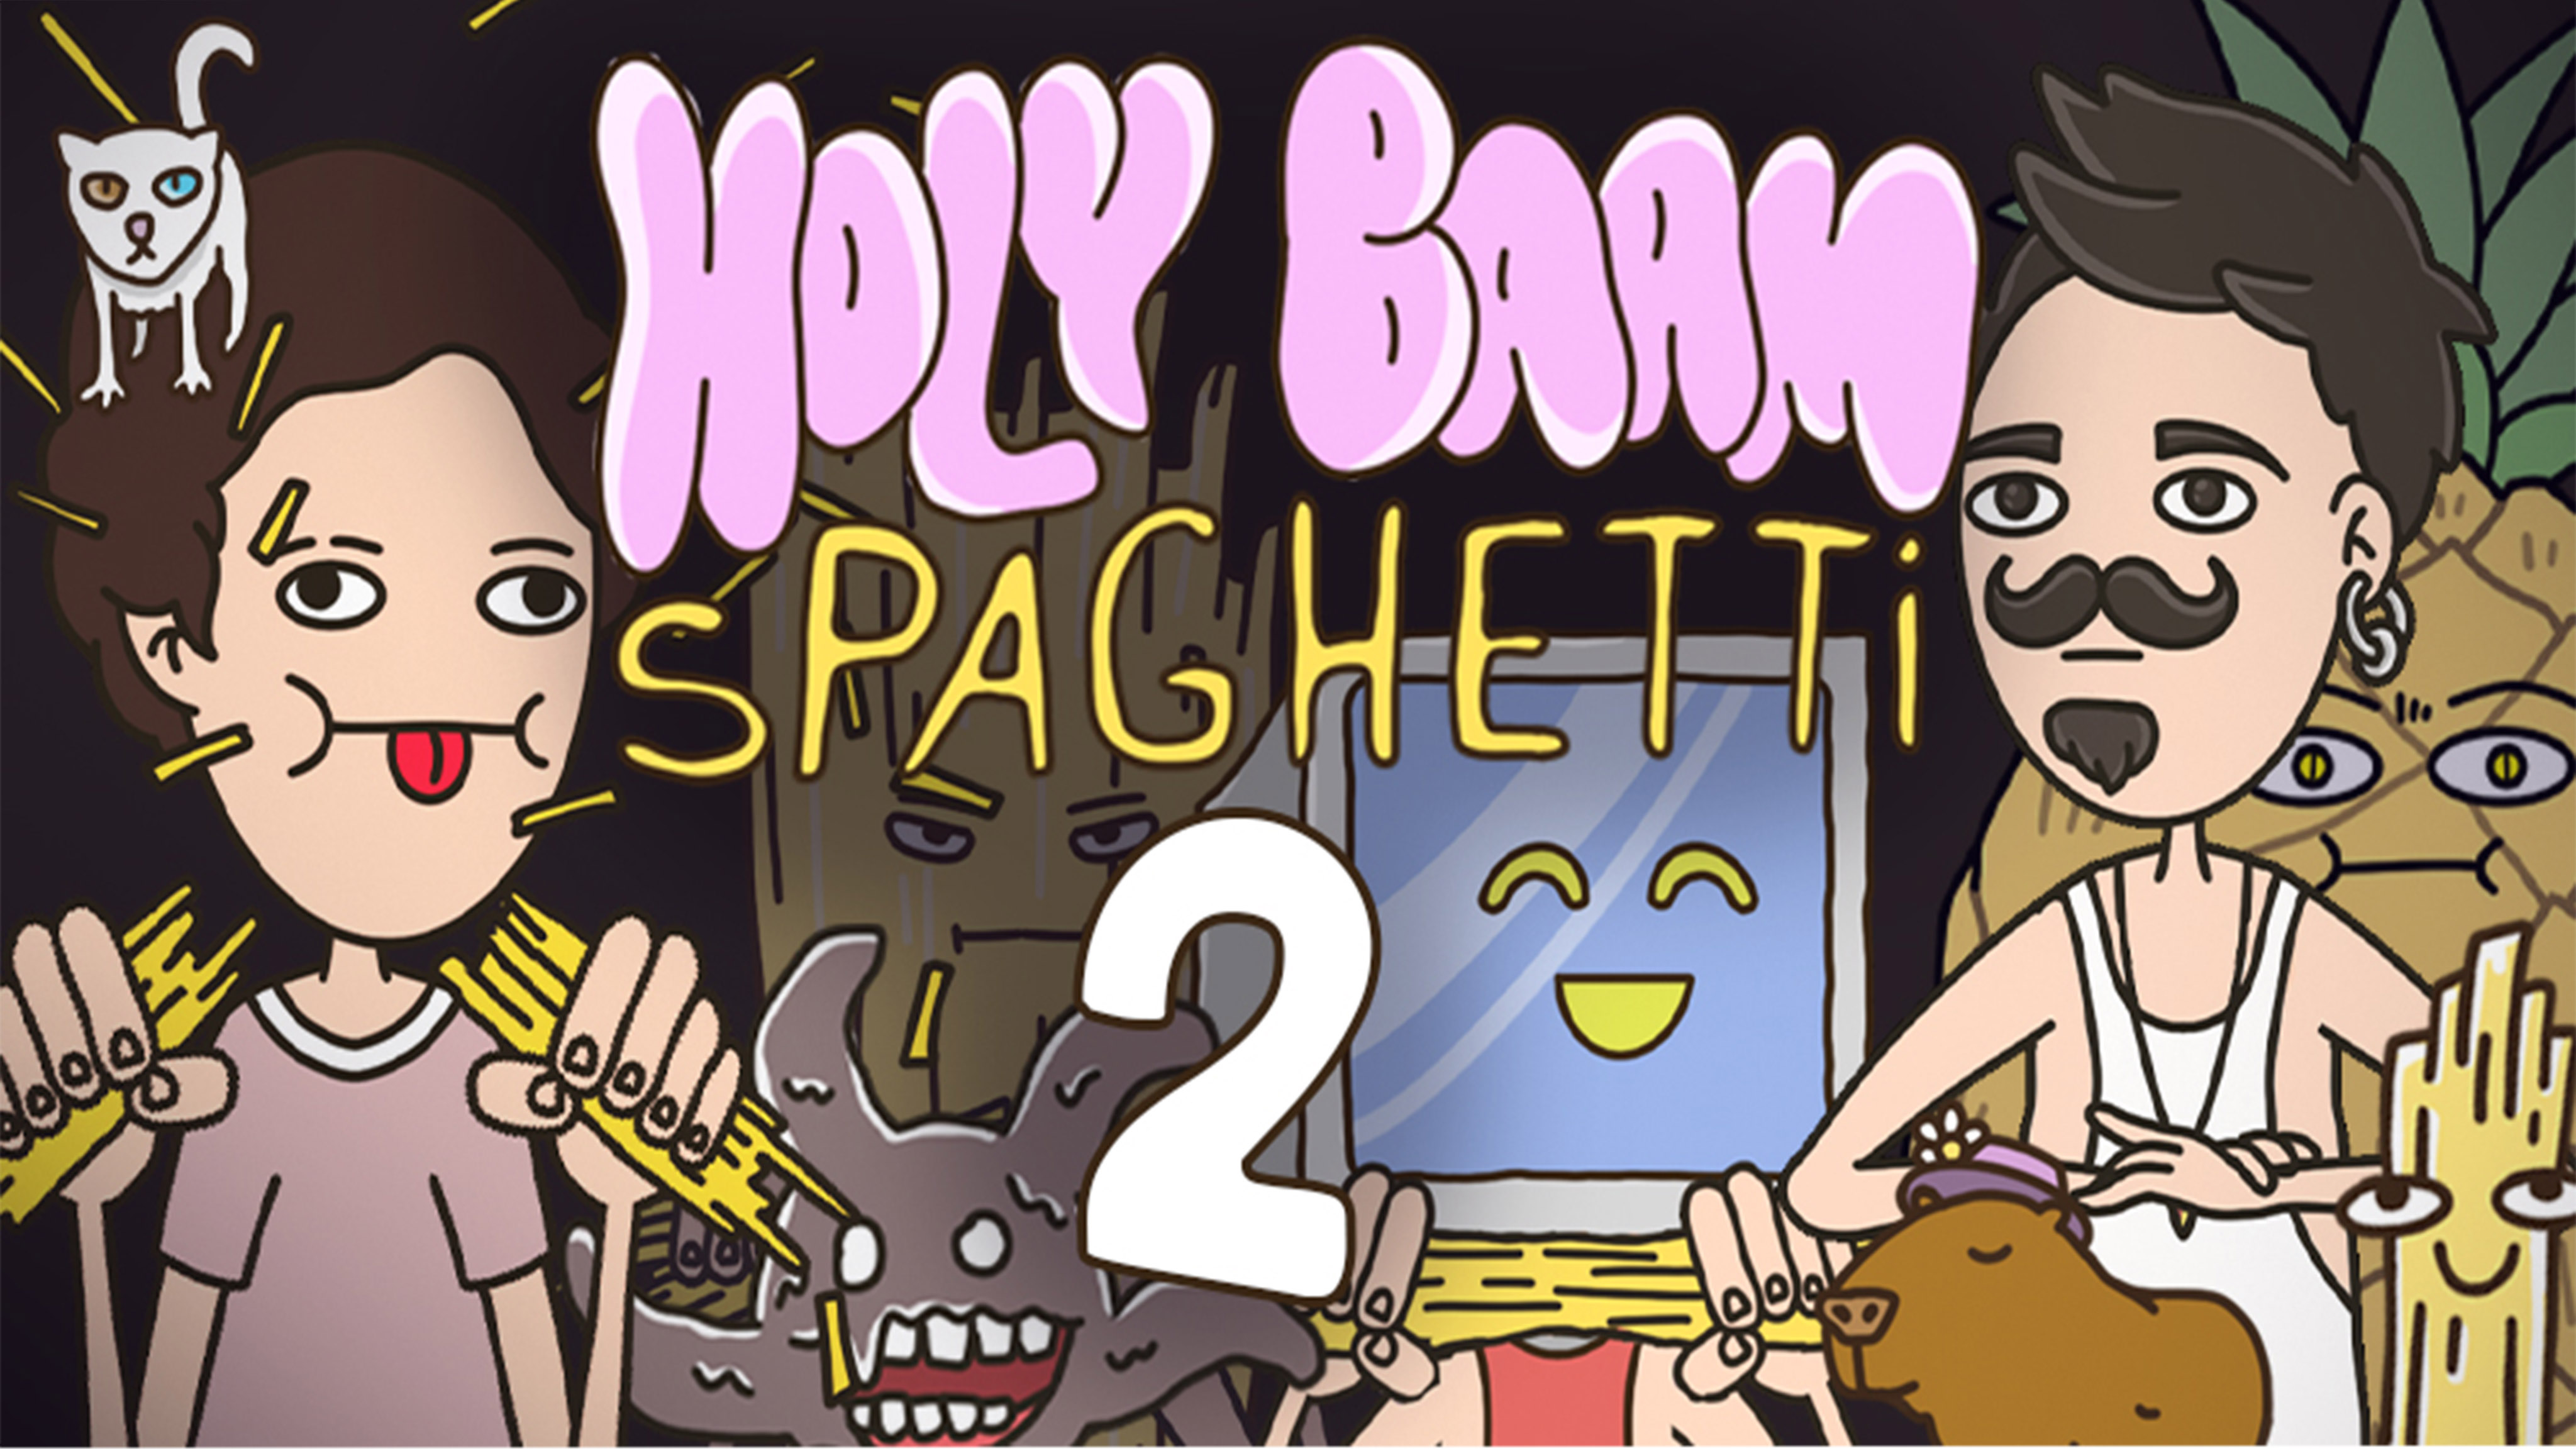 Игра спагетти играть. Игра про спагетти 2. Игра про спагетти ломать. Игра про спагетти персонажи. Спагетти андроид.